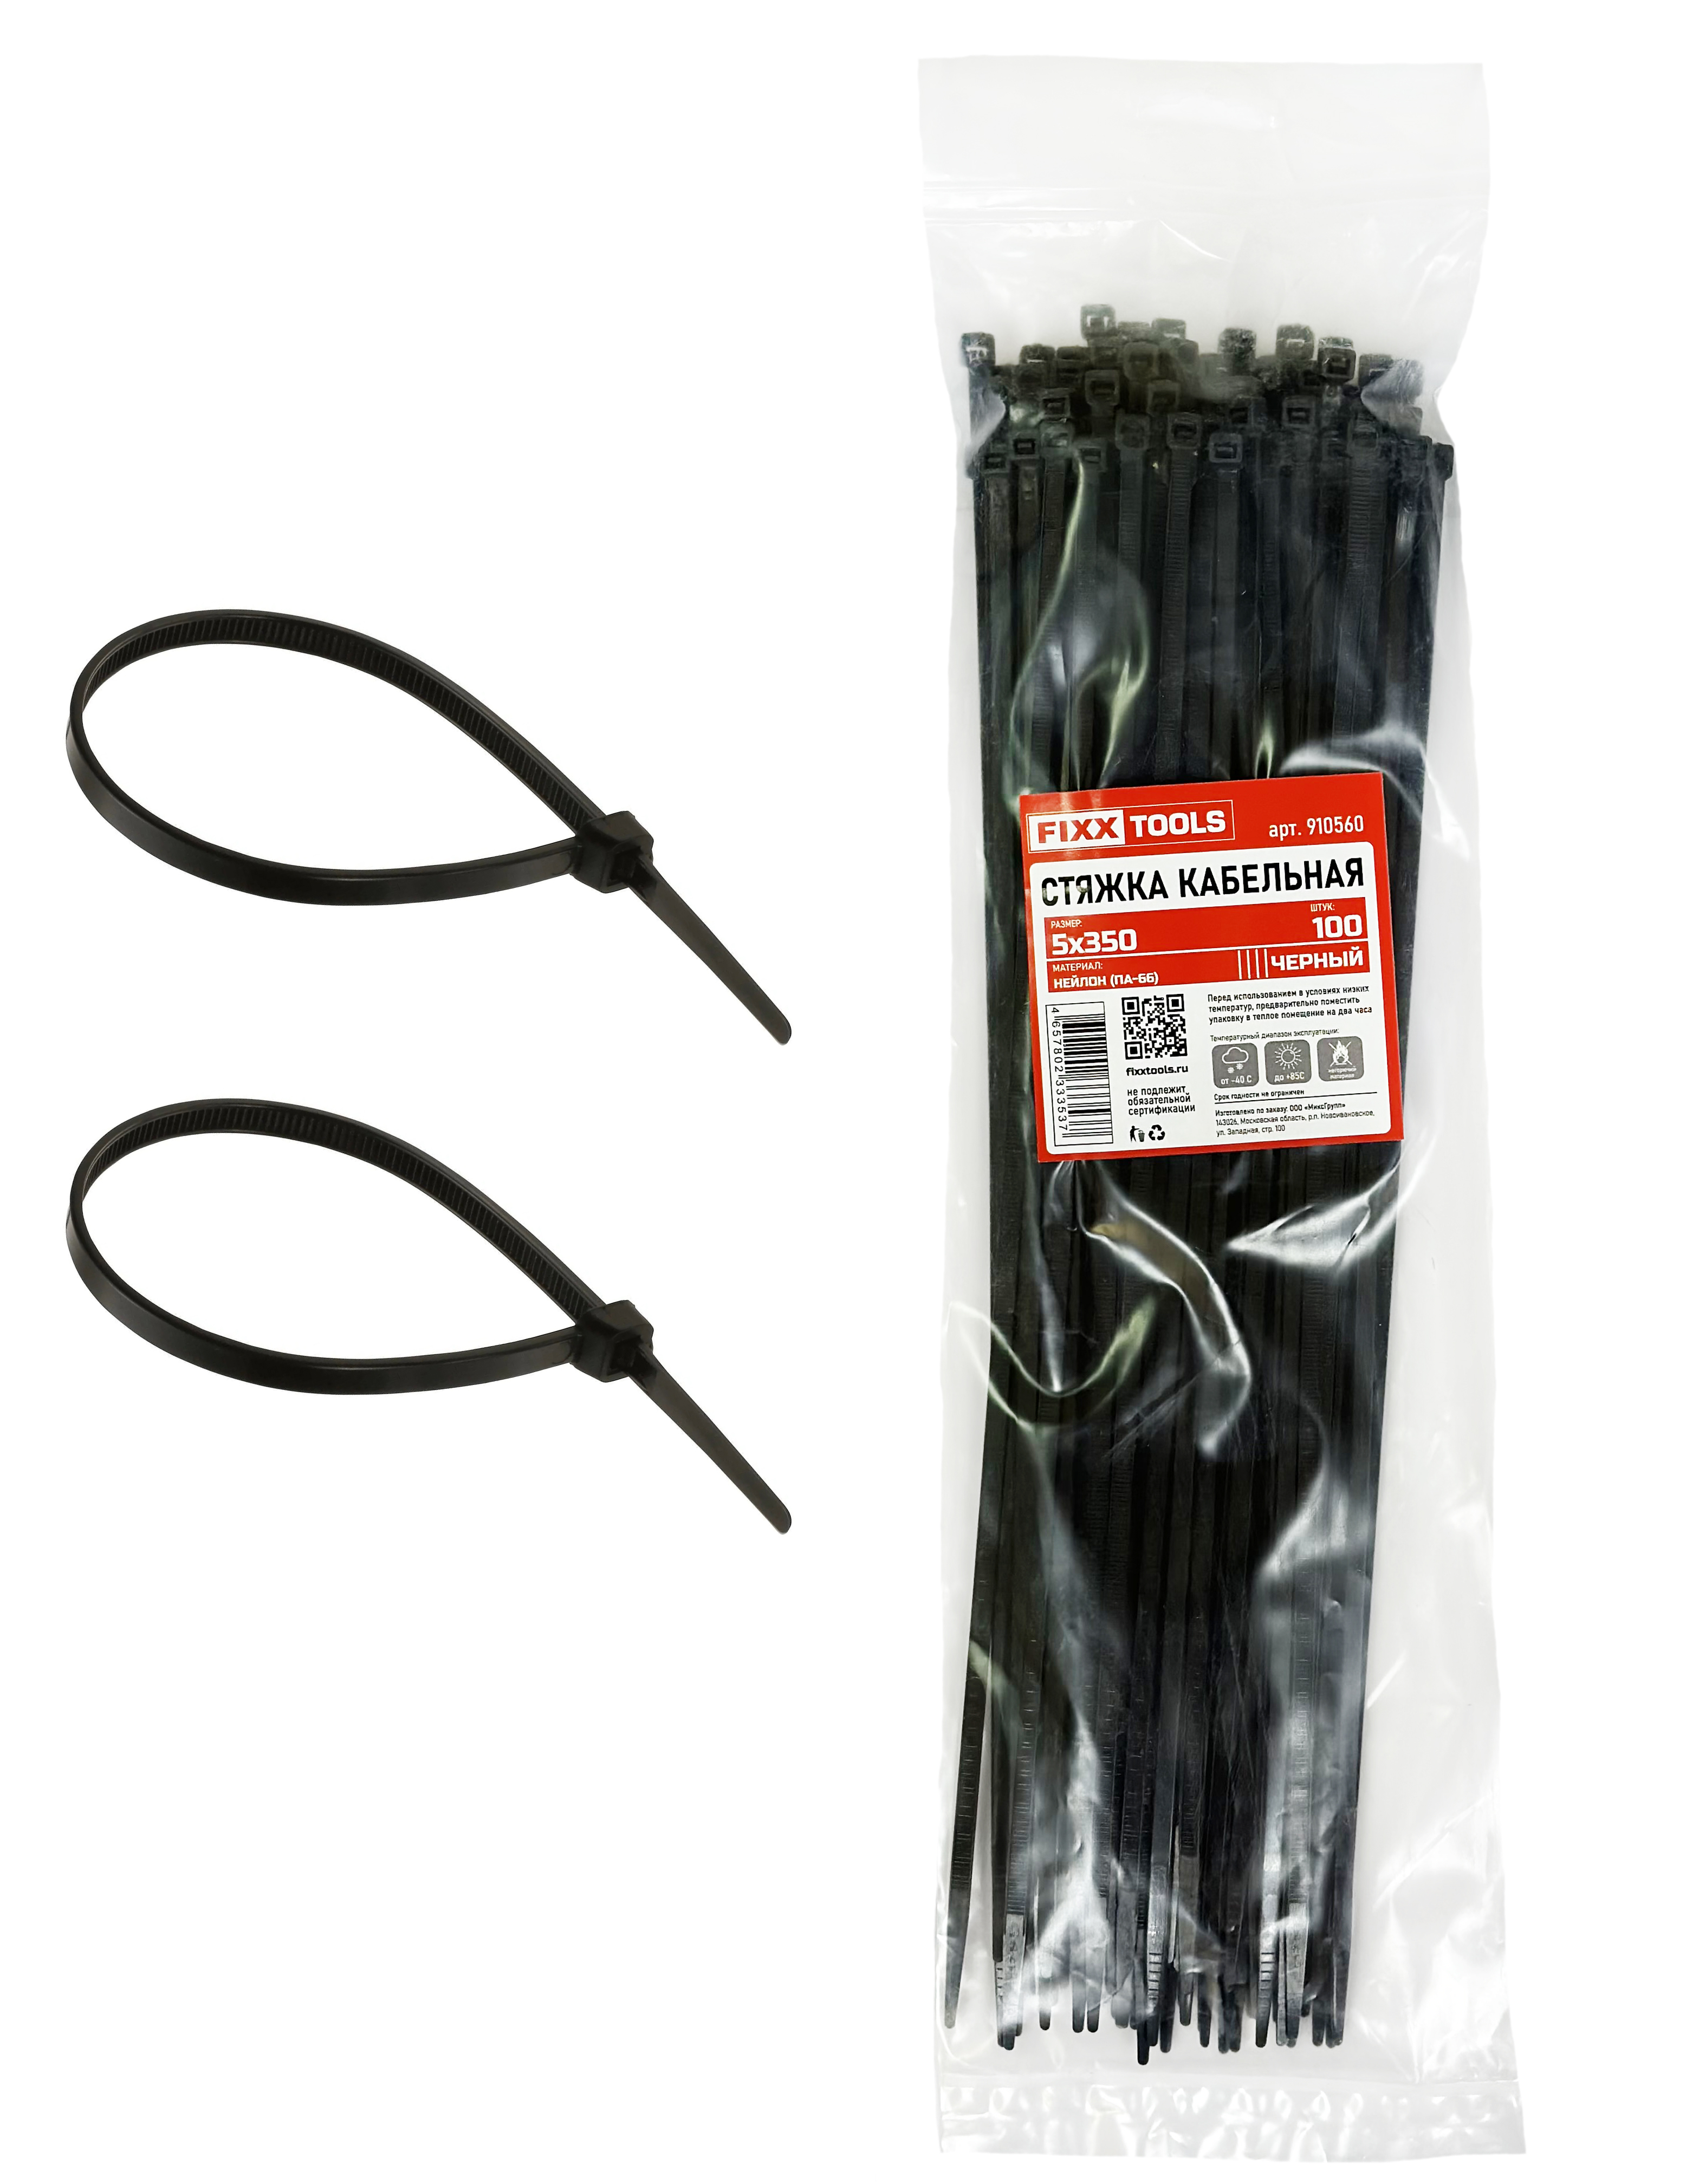 Стяжка кабельная FIXXTOOLS 5х350мм черная упак 100шт 910560 бумага сотовая для упак черная 80г м2 длин 50м шир500